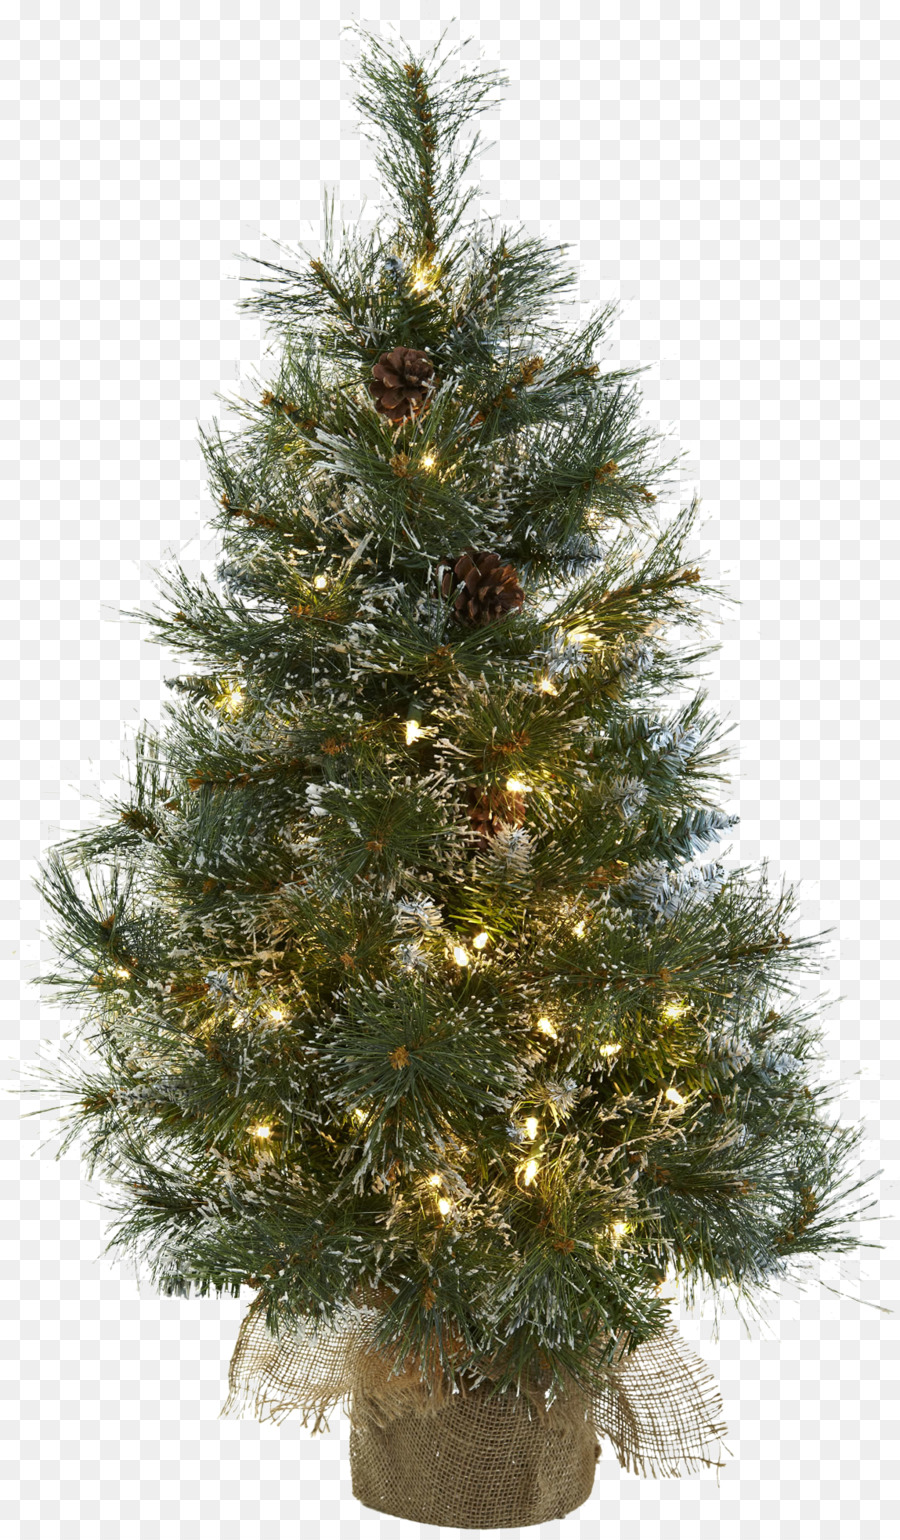 Vorbeleuchteter Baum künstlicher Weihnachtsbaum Weihnachtstag - Gummibaum png fig